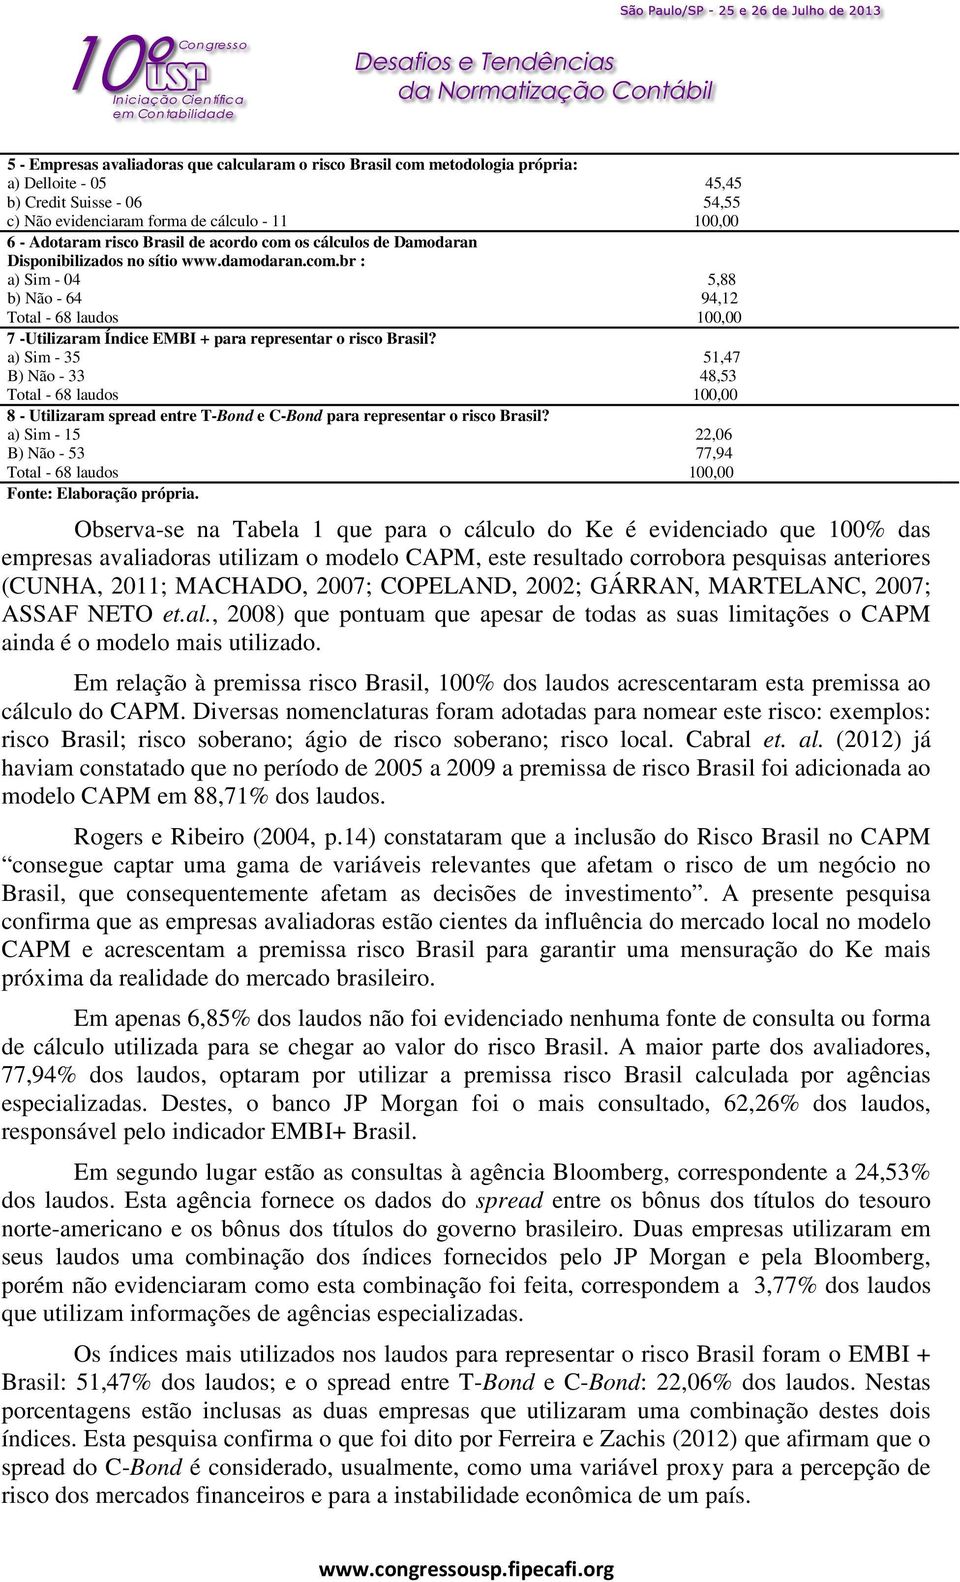 a) Sim - 35 51,47 B) Não - 33 48,53 Total - 68 laudos 100,00 8 - Utilizaram spread entre T-Bond e C-Bond para representar o risco Brasil?